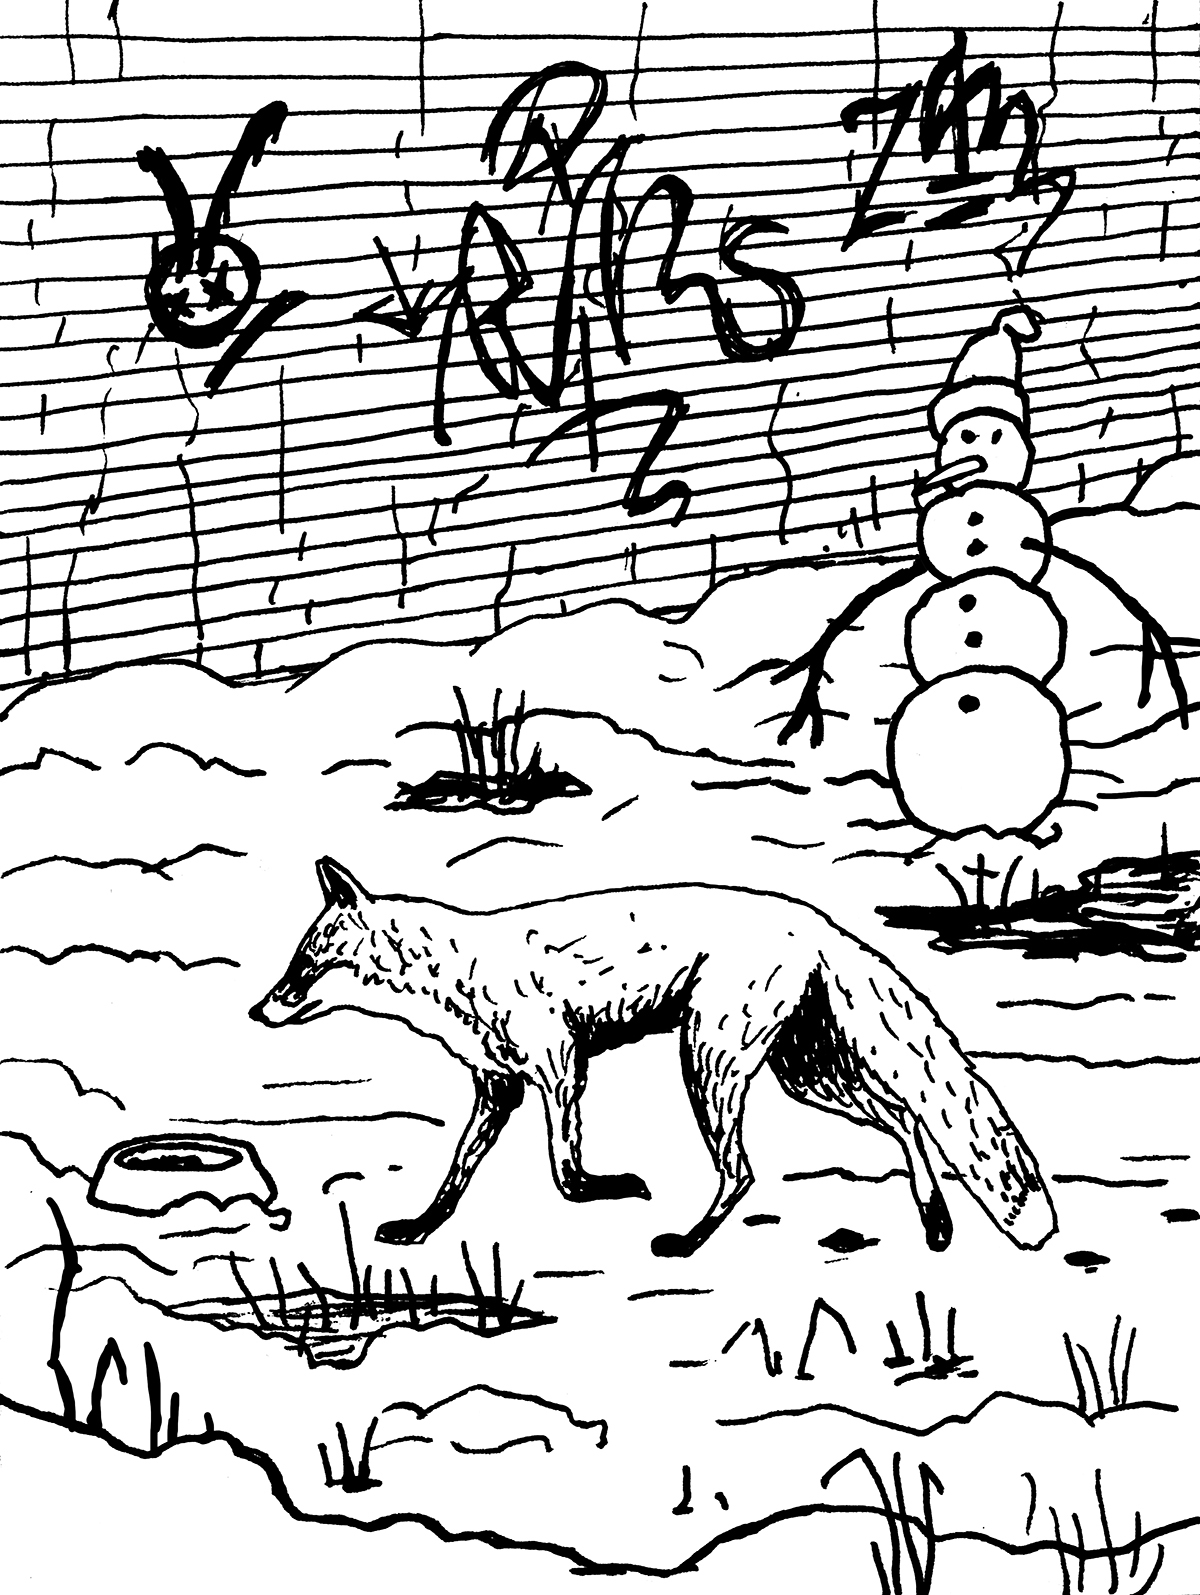 Lisica zbliża się do miski z jedzeniem wśród zimowej miejskiej scenerii. Spod śniegu wystają kępy traw, w tle widoczny bałwan oraz pokryty tagami mur